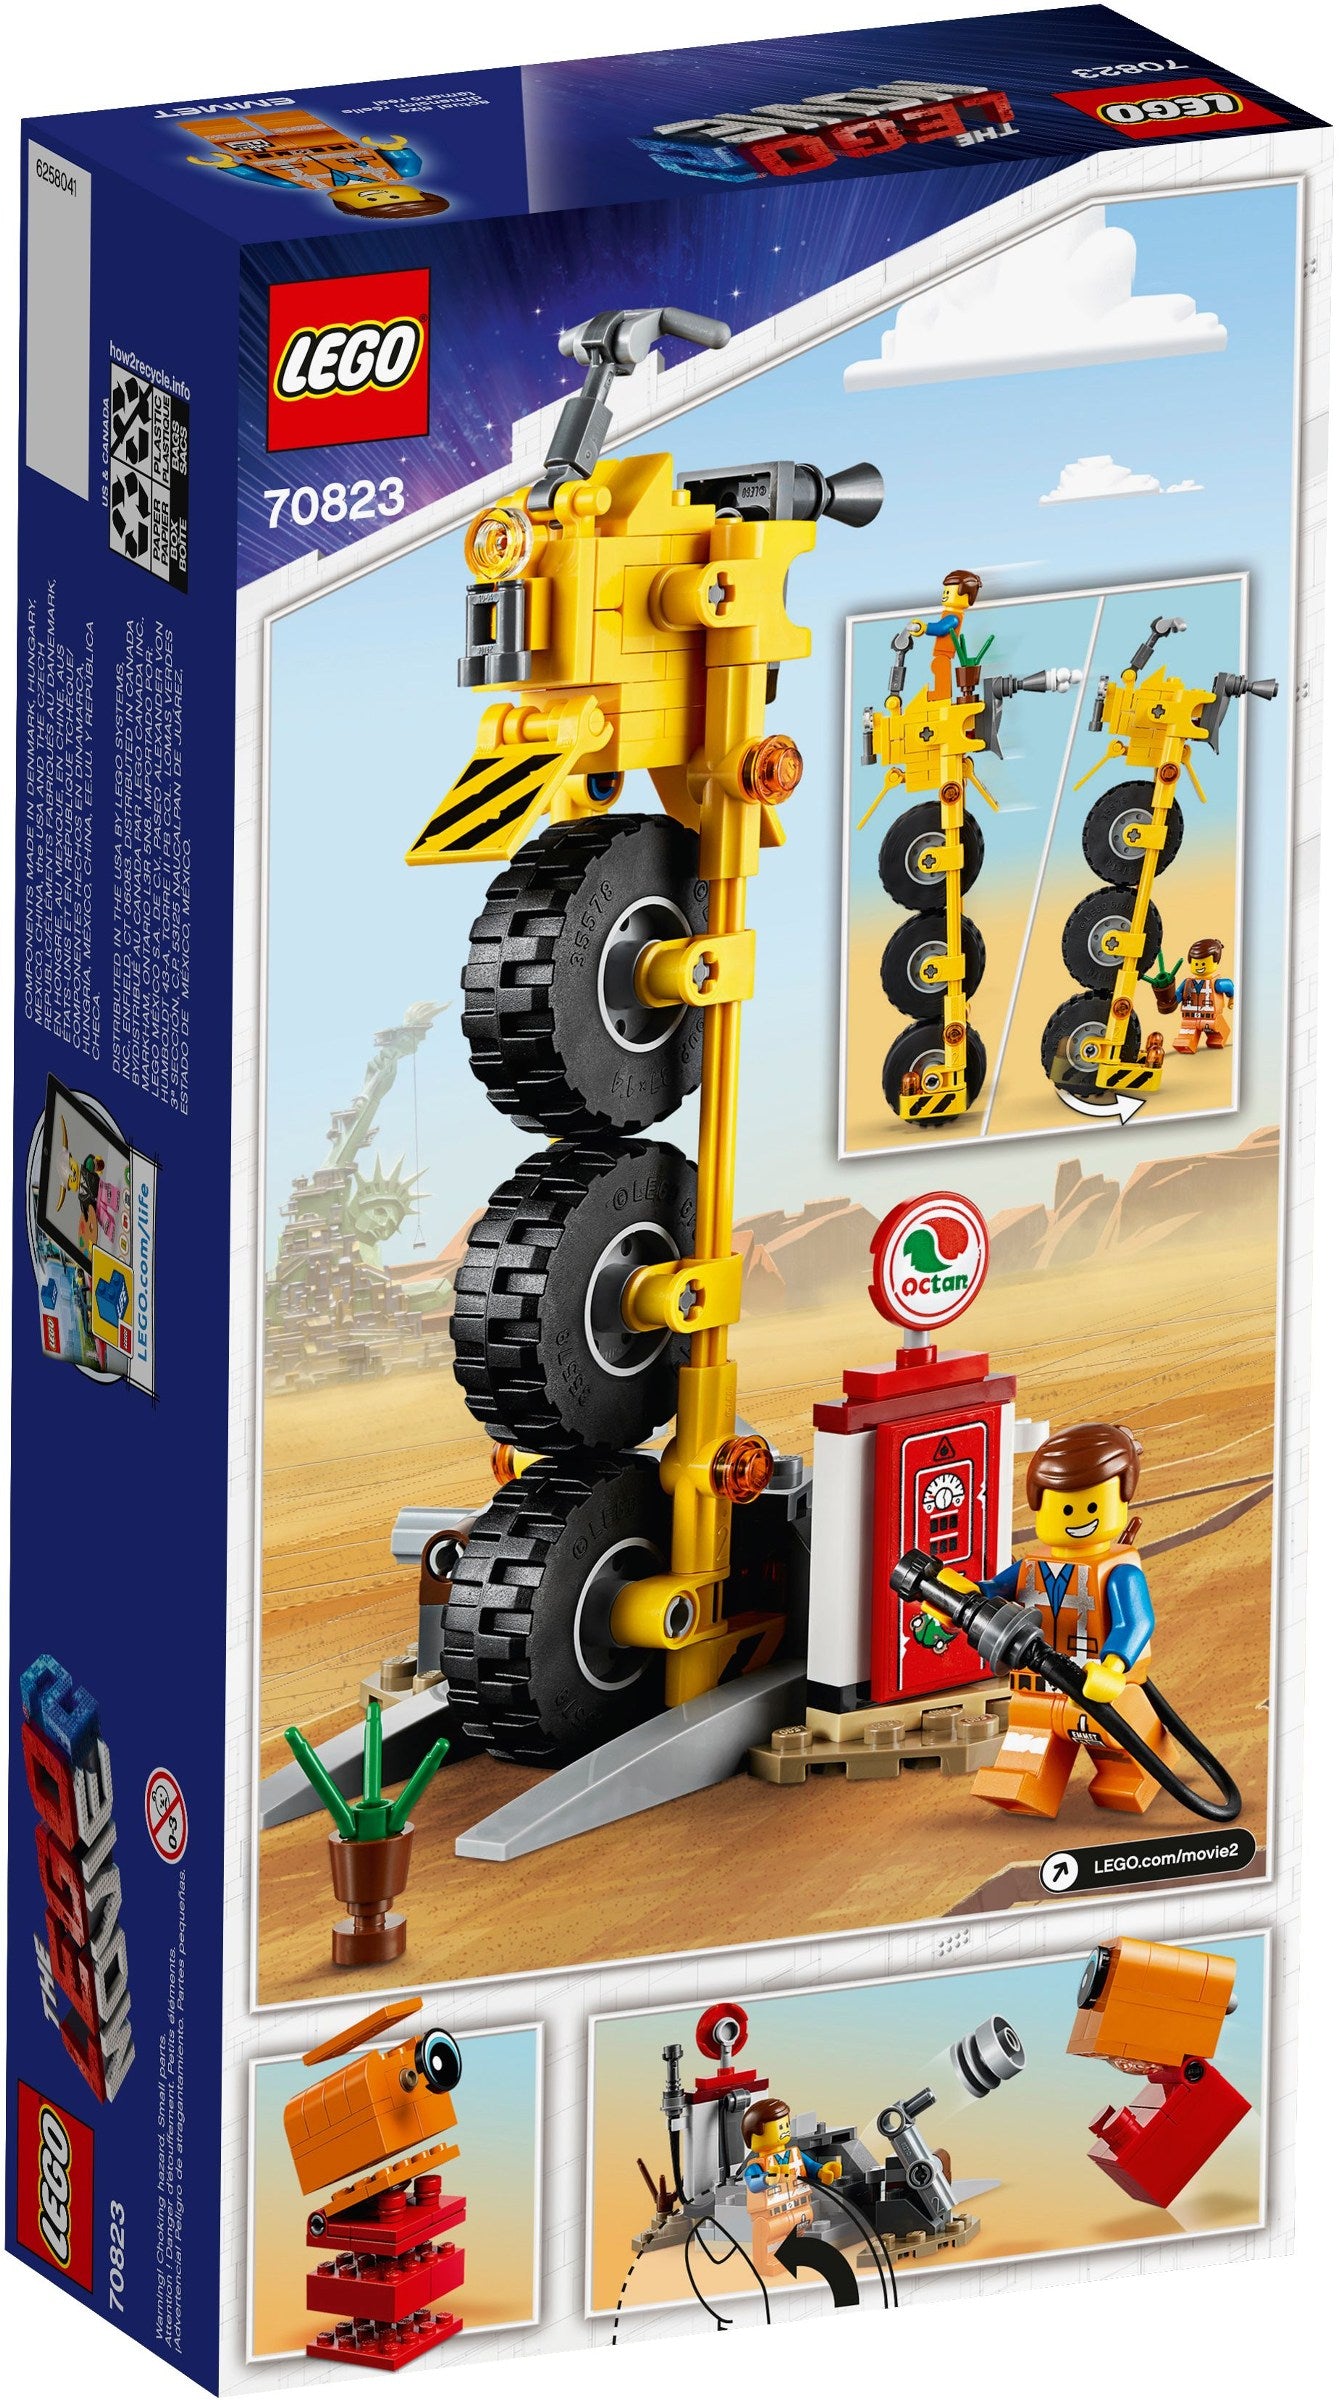 LEGO 70823 Emmet's Thricycle!